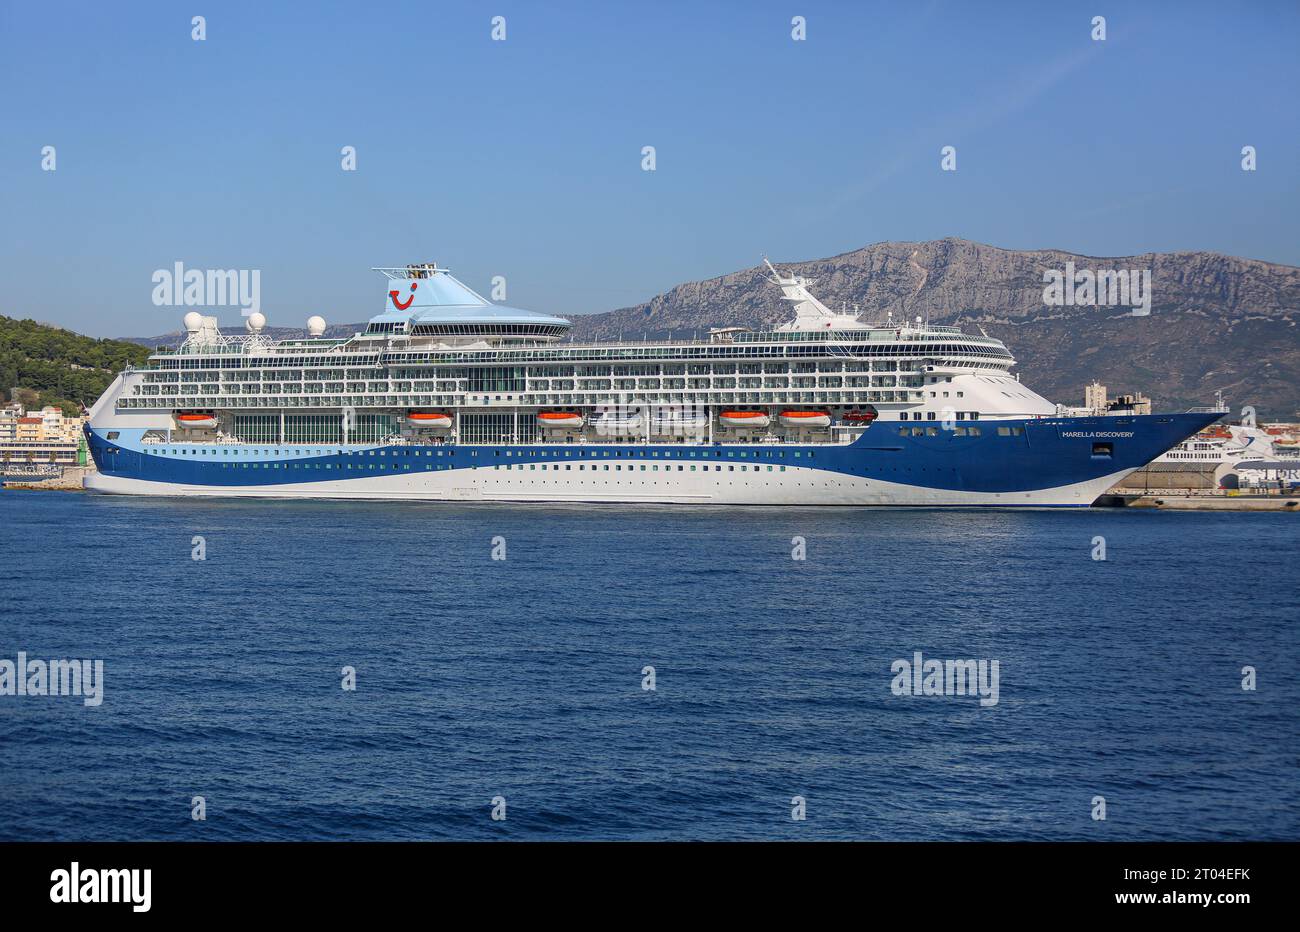 Das Kreuzfahrtschiff Marella Discovery (ehemalige Pracht der Meere), Marella Cruises, Stockfoto